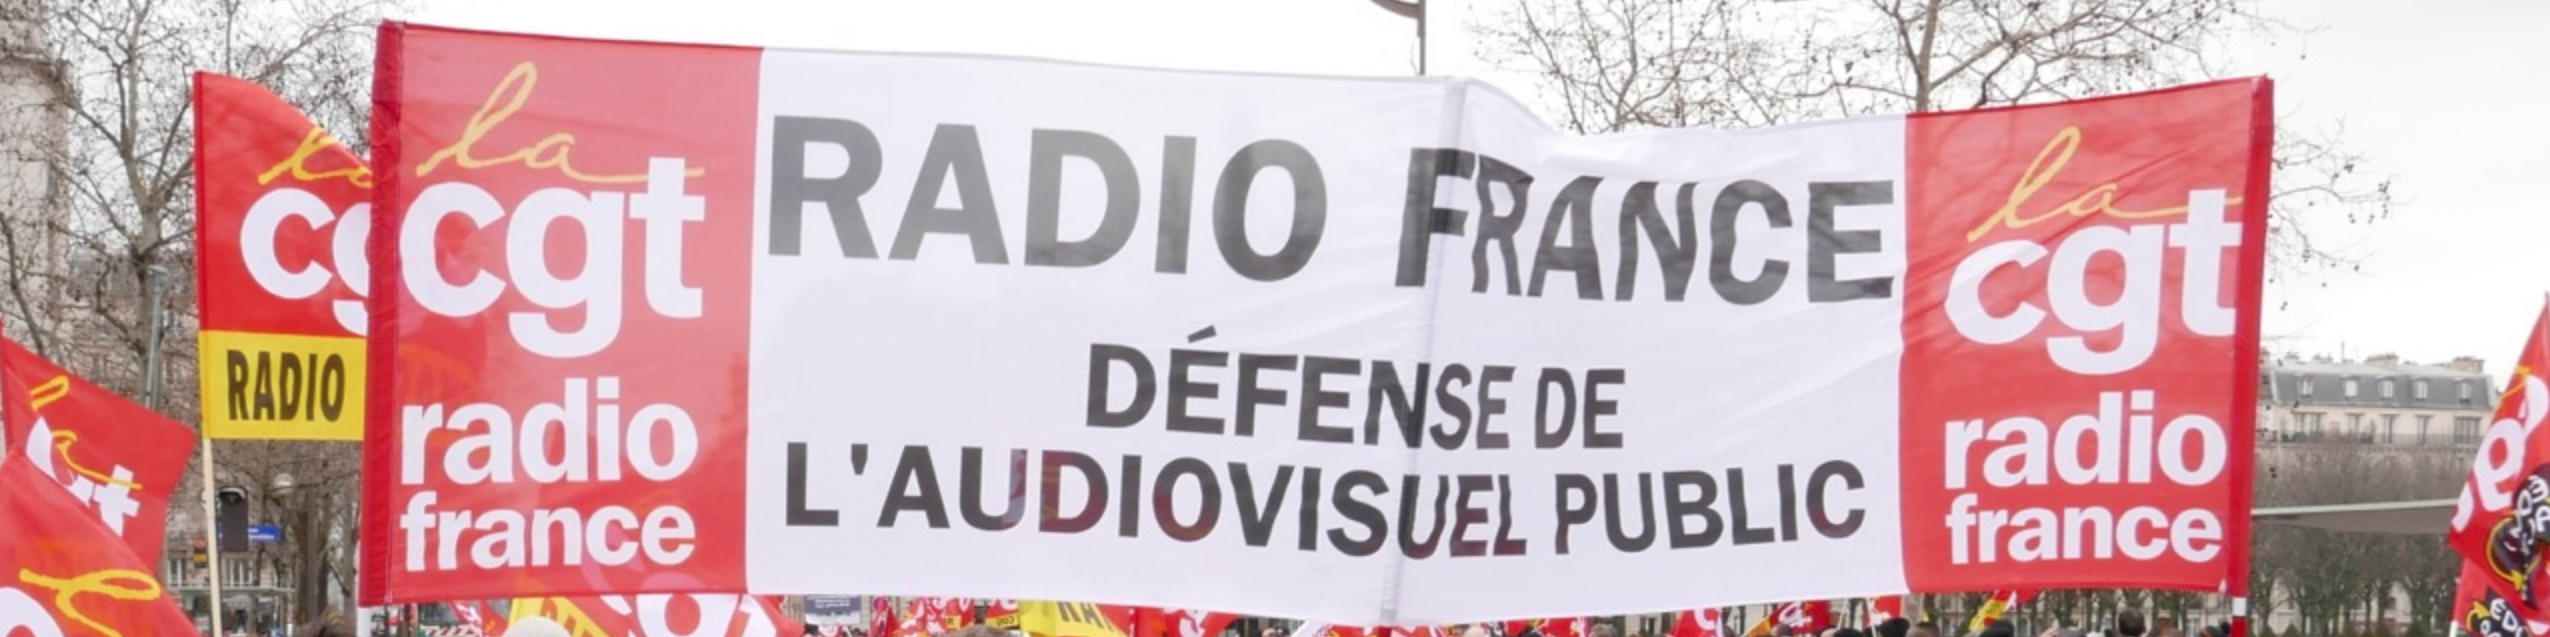 Résultat de recherche d'images pour "Radio France CGT Images"